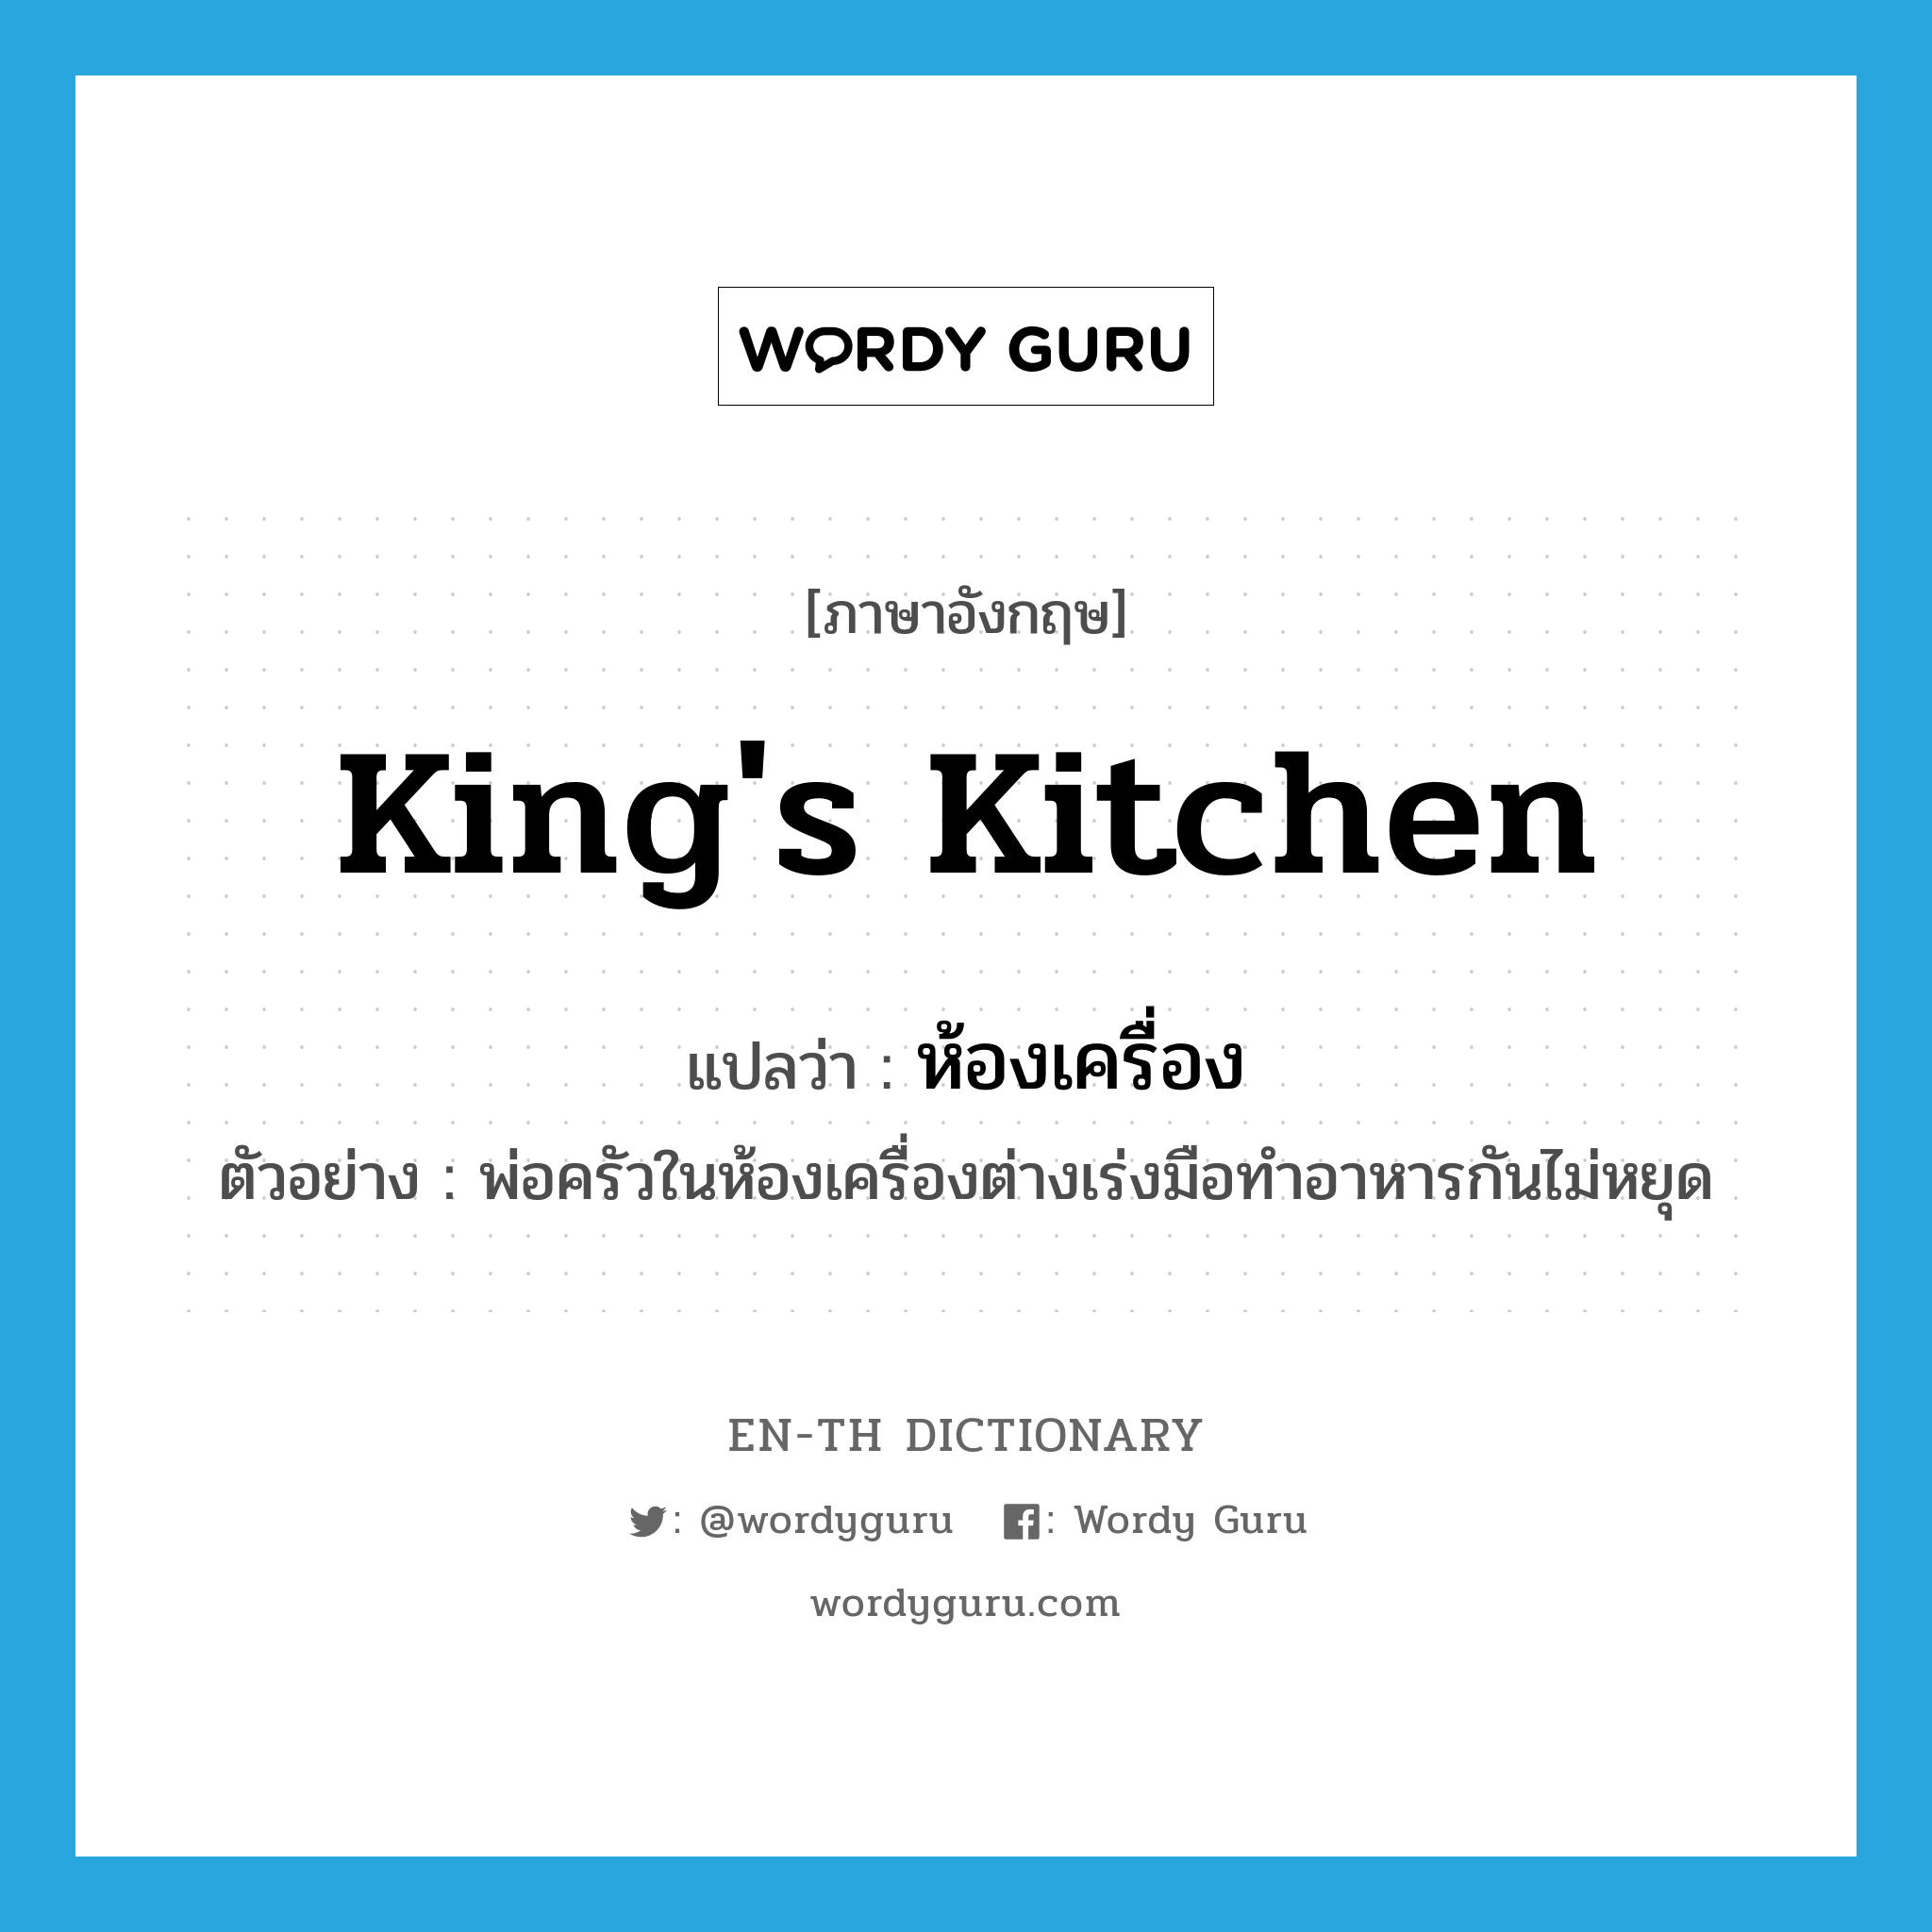 king's kitchen แปลว่า?, คำศัพท์ภาษาอังกฤษ king's kitchen แปลว่า ห้องเครื่อง ประเภท N ตัวอย่าง พ่อครัวในห้องเครื่องต่างเร่งมือทำอาหารกันไม่หยุด หมวด N